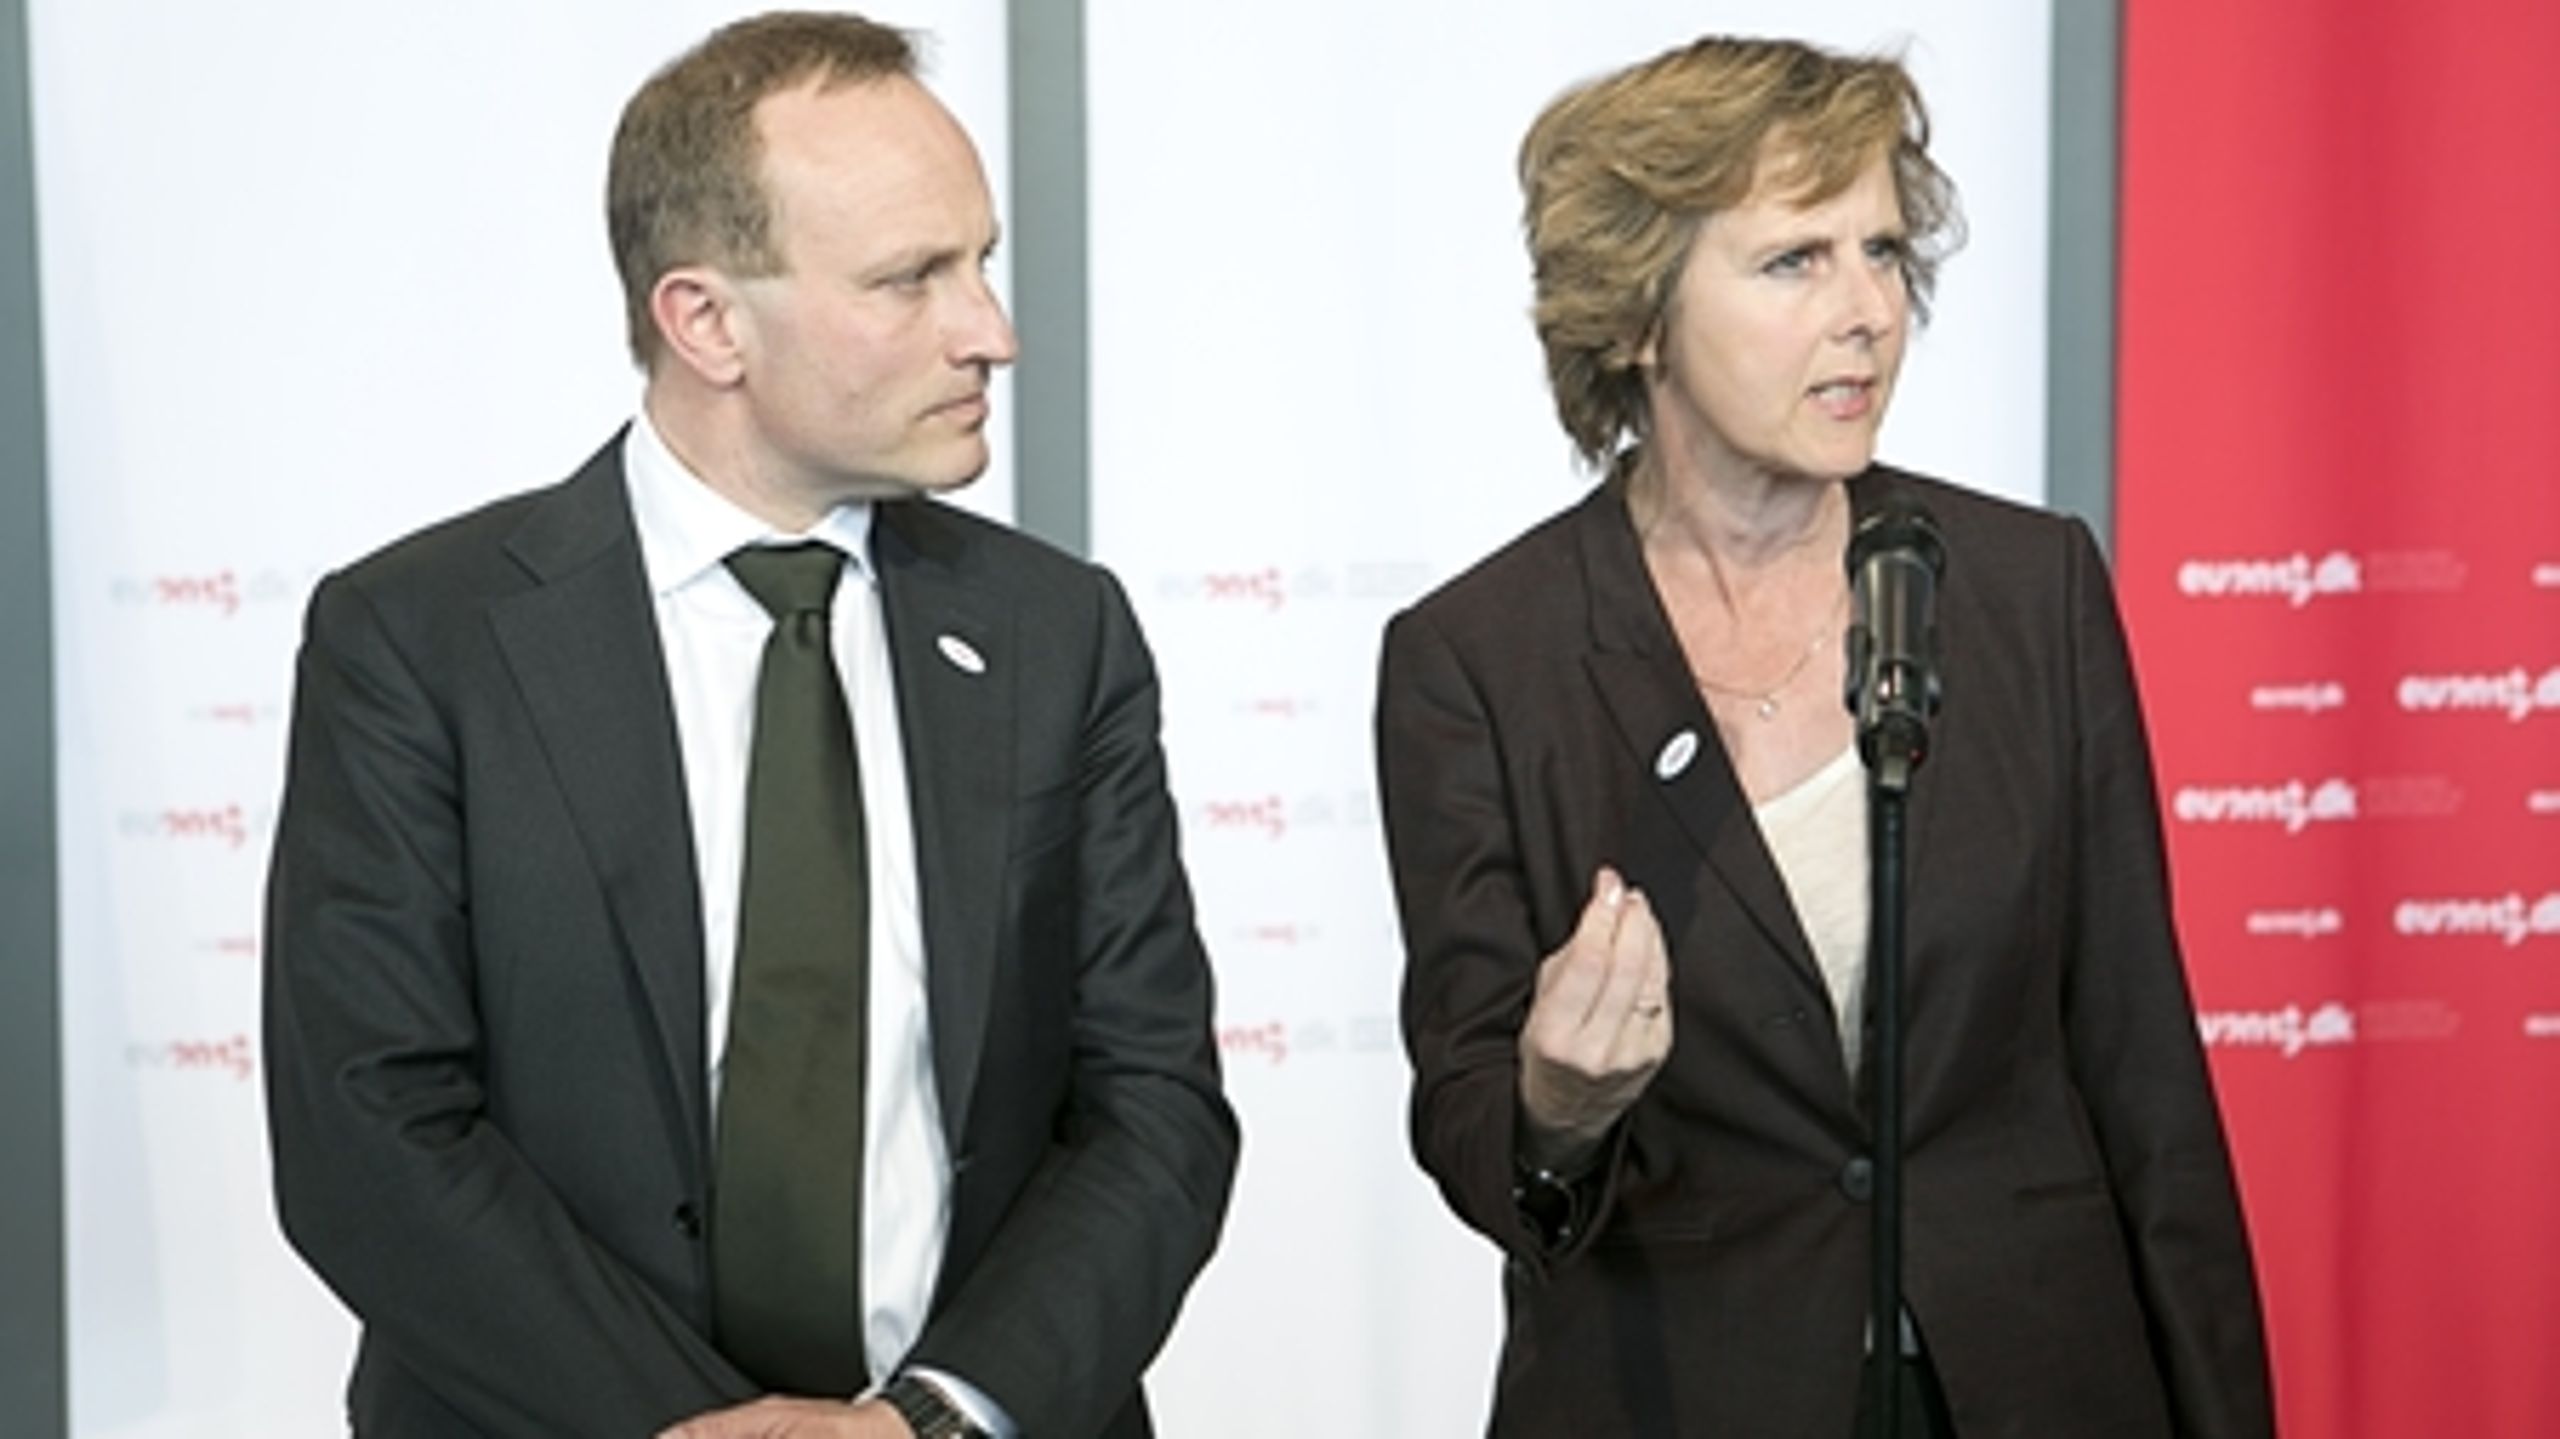 Det danske formandskab håber på en energiaftale i næste uge.